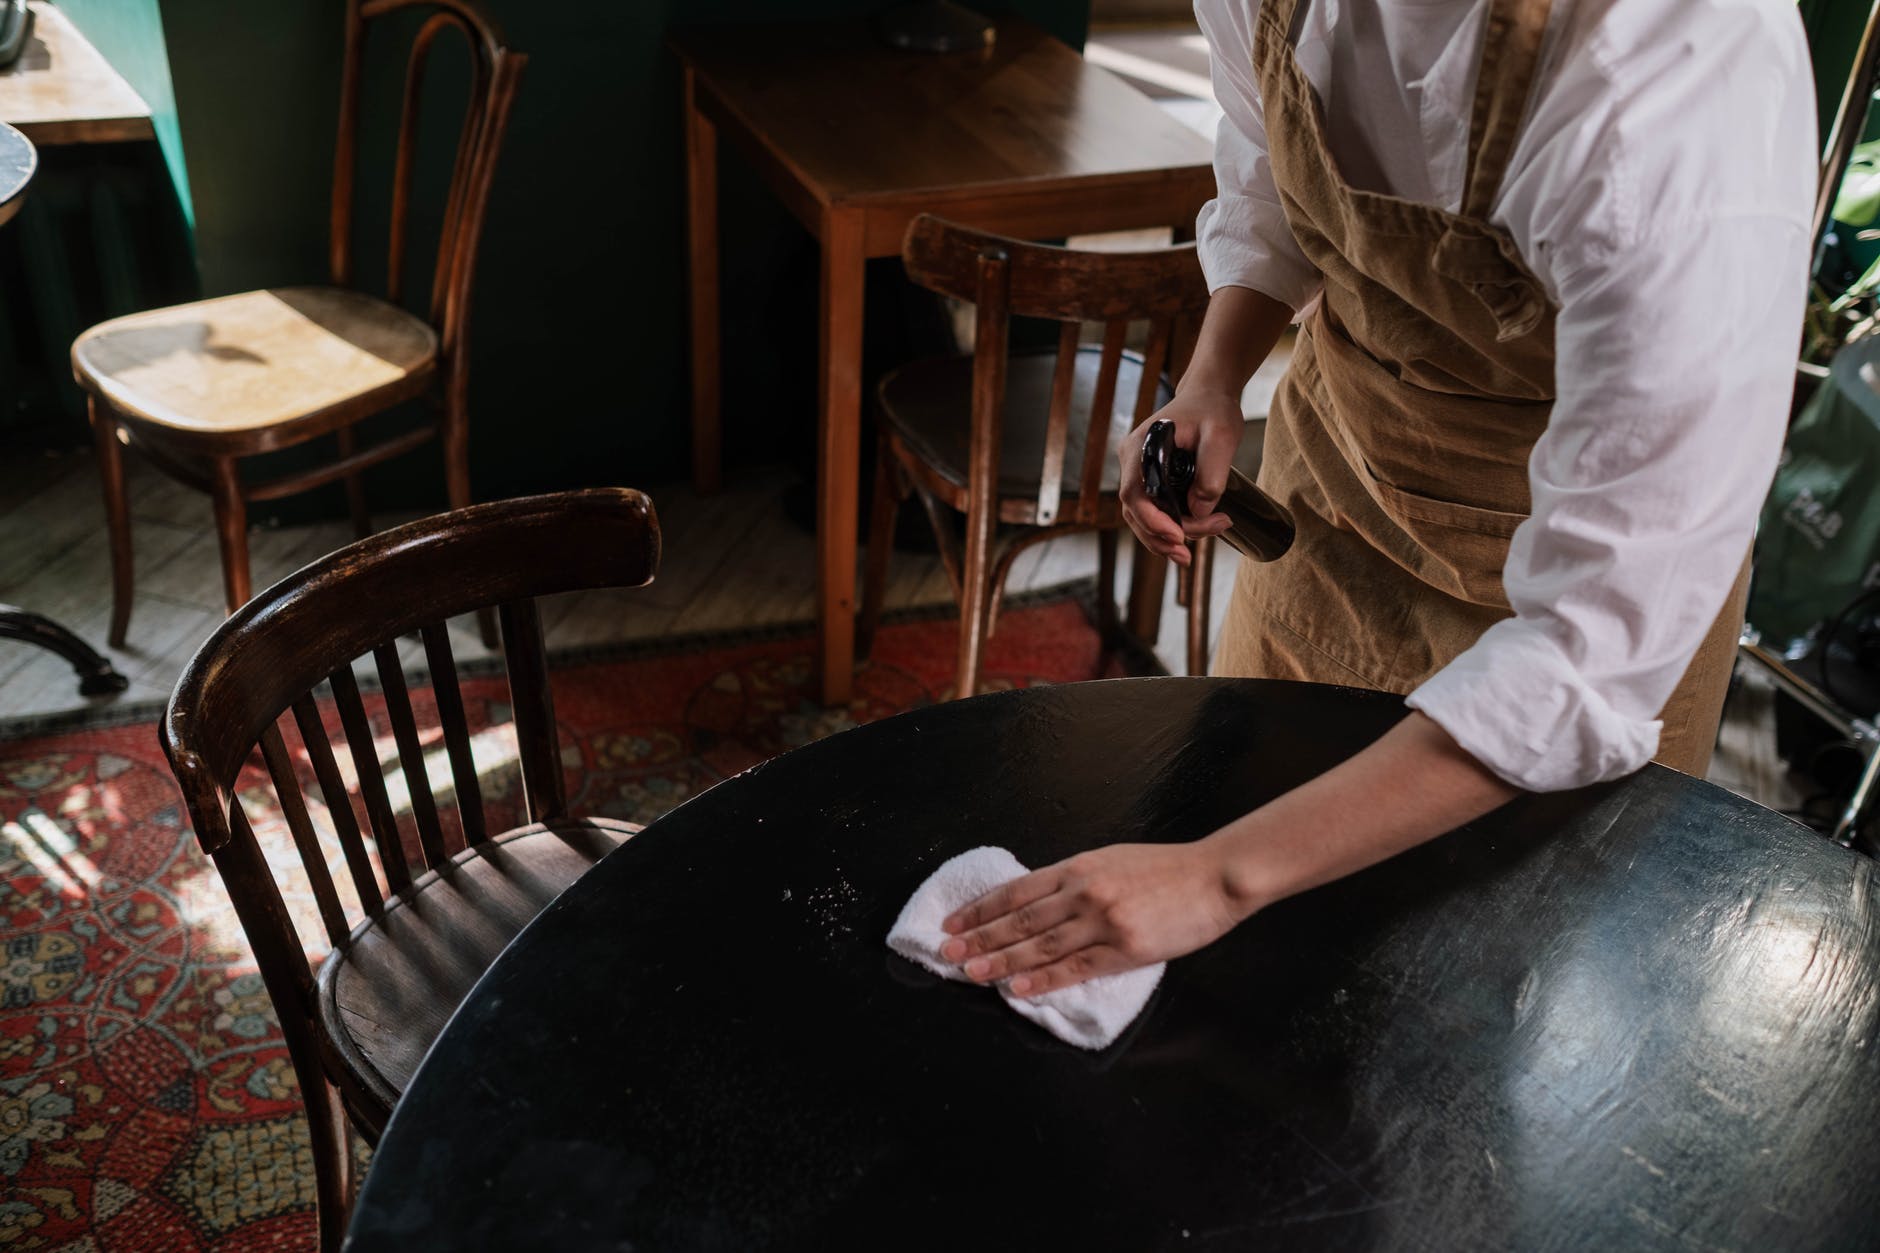 Una camarera limpia una de las meses a su cargo. | Foto: Pexels